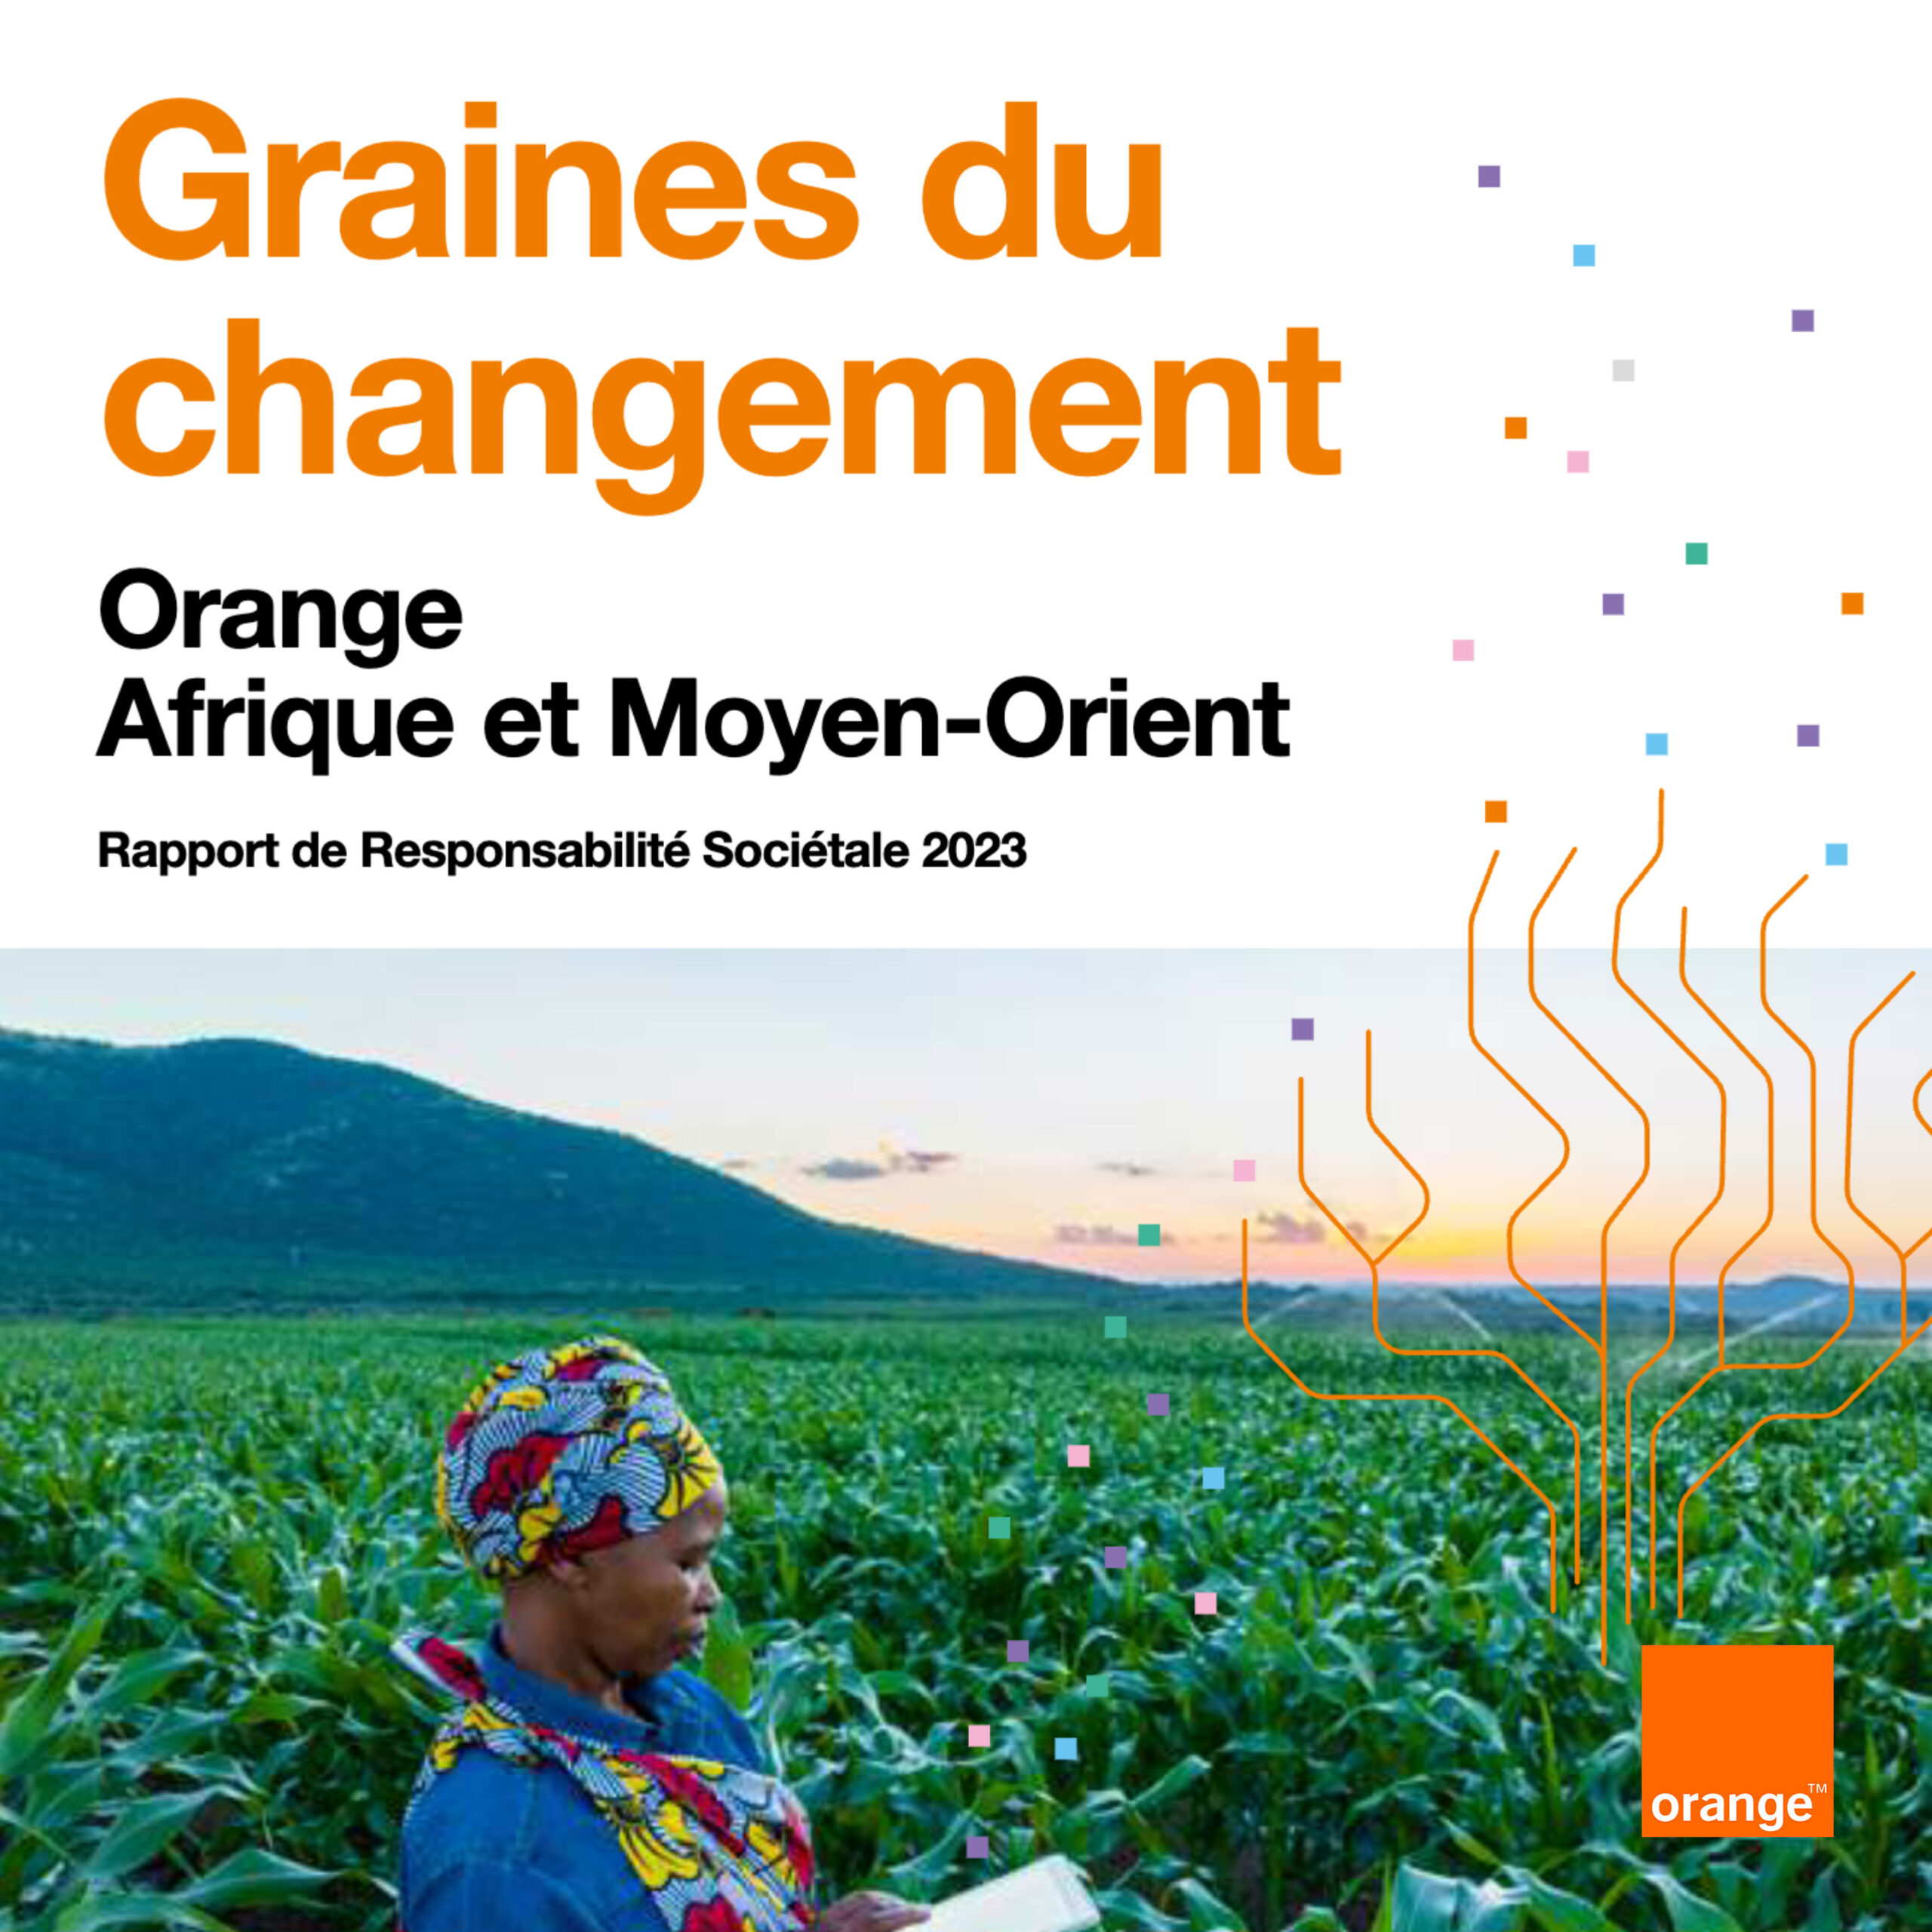 Orange Afrique et Moyen-Orient publie « Graines du changement » son rapport de responsabilité sociétale d’entreprise (RSE) 2023